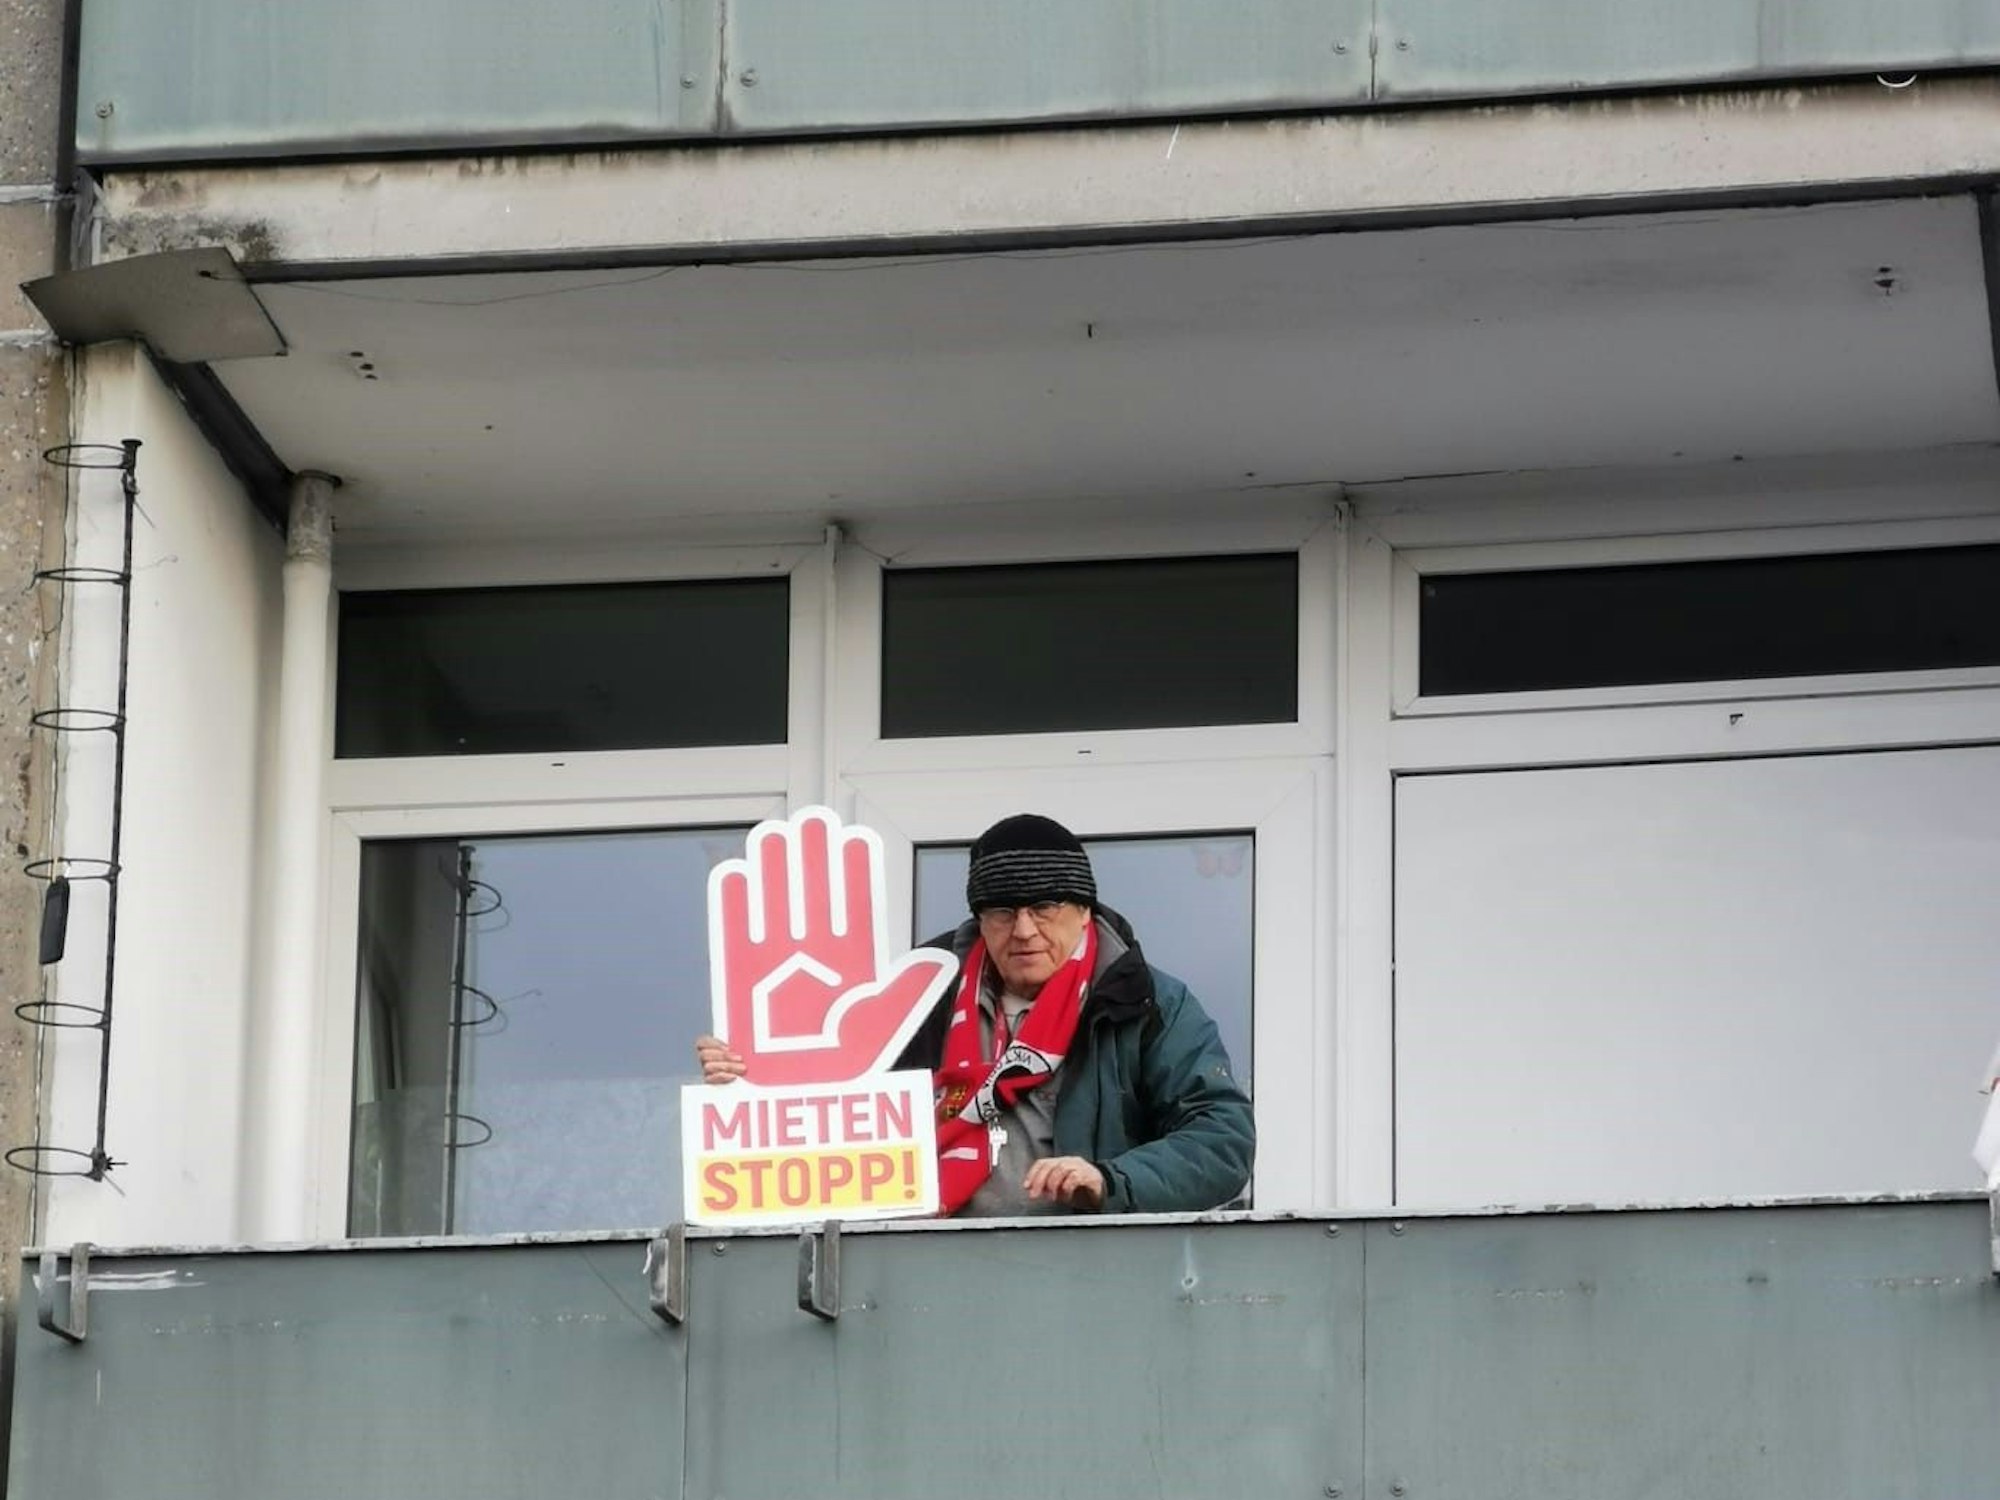 Rainer Kippe steht auf einem Balkon und hält ein Plakat mit der Forderung "Mieten Stopp" in der Hand.